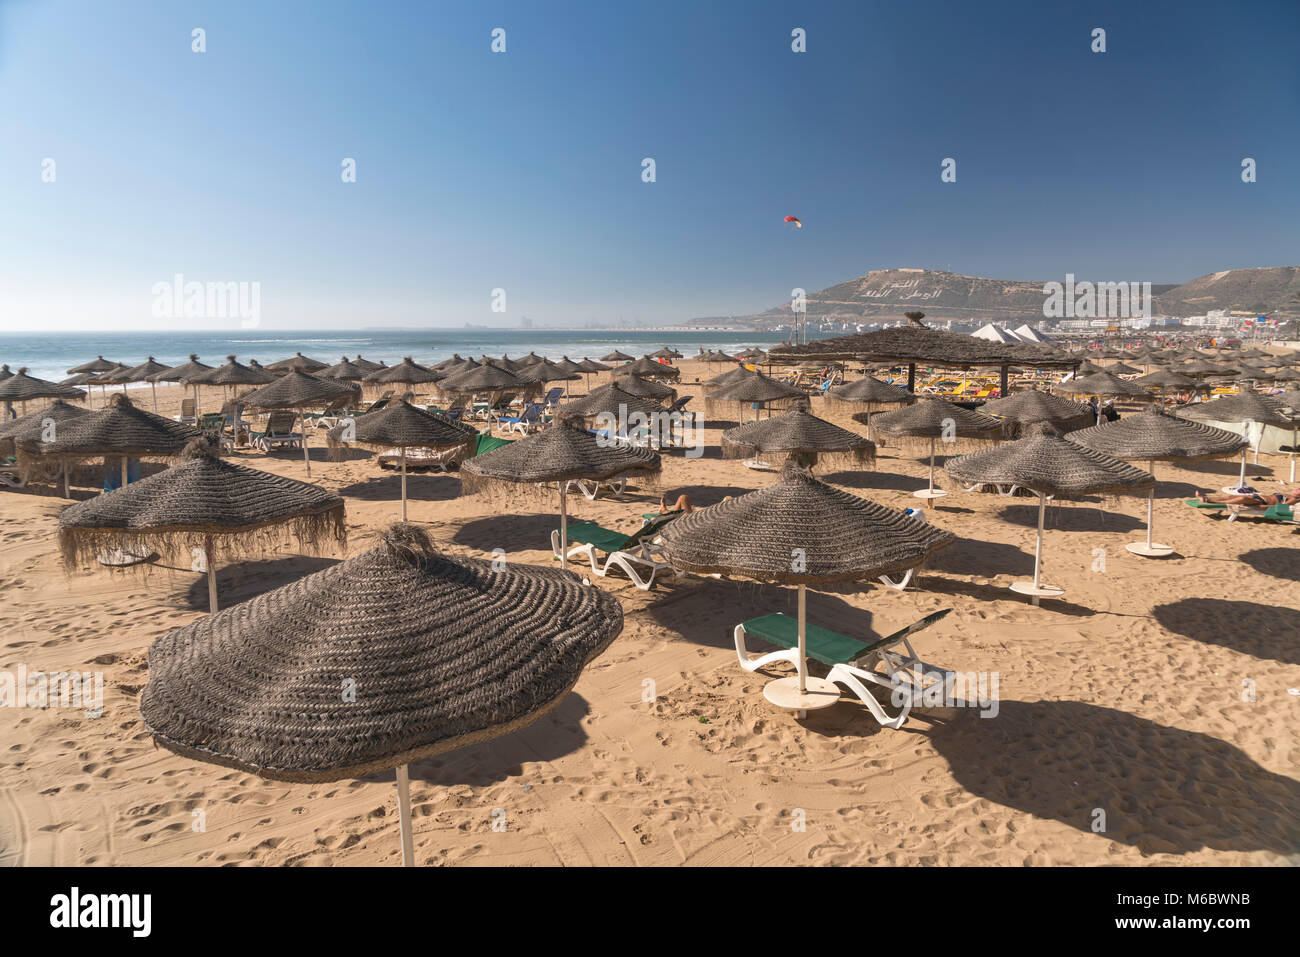 Sonnenschirme am Strand à Agadir, Königreich Marokko, Afrika | parasols à la plage à Agadir, Royaume du Maroc, l'Afrique Banque D'Images